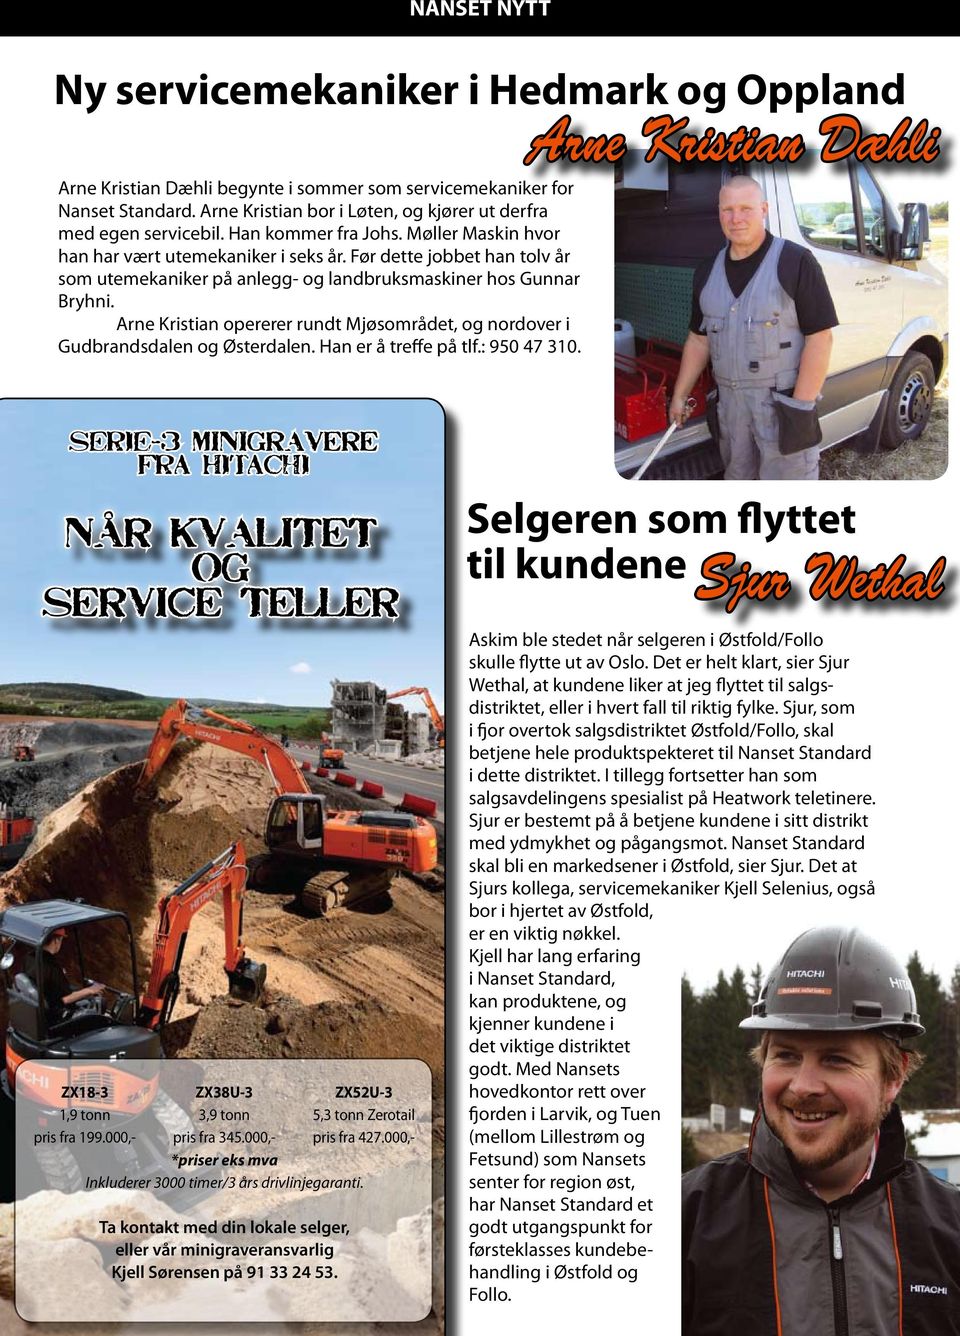 Før dette jobbet han tolv år som utemekaniker på anlegg- og landbruksmaskiner hos Gunnar Bryhni. Arne Kristian opererer rundt Mjøsområdet, og nordover i Gudbrandsdalen og Østerdalen.